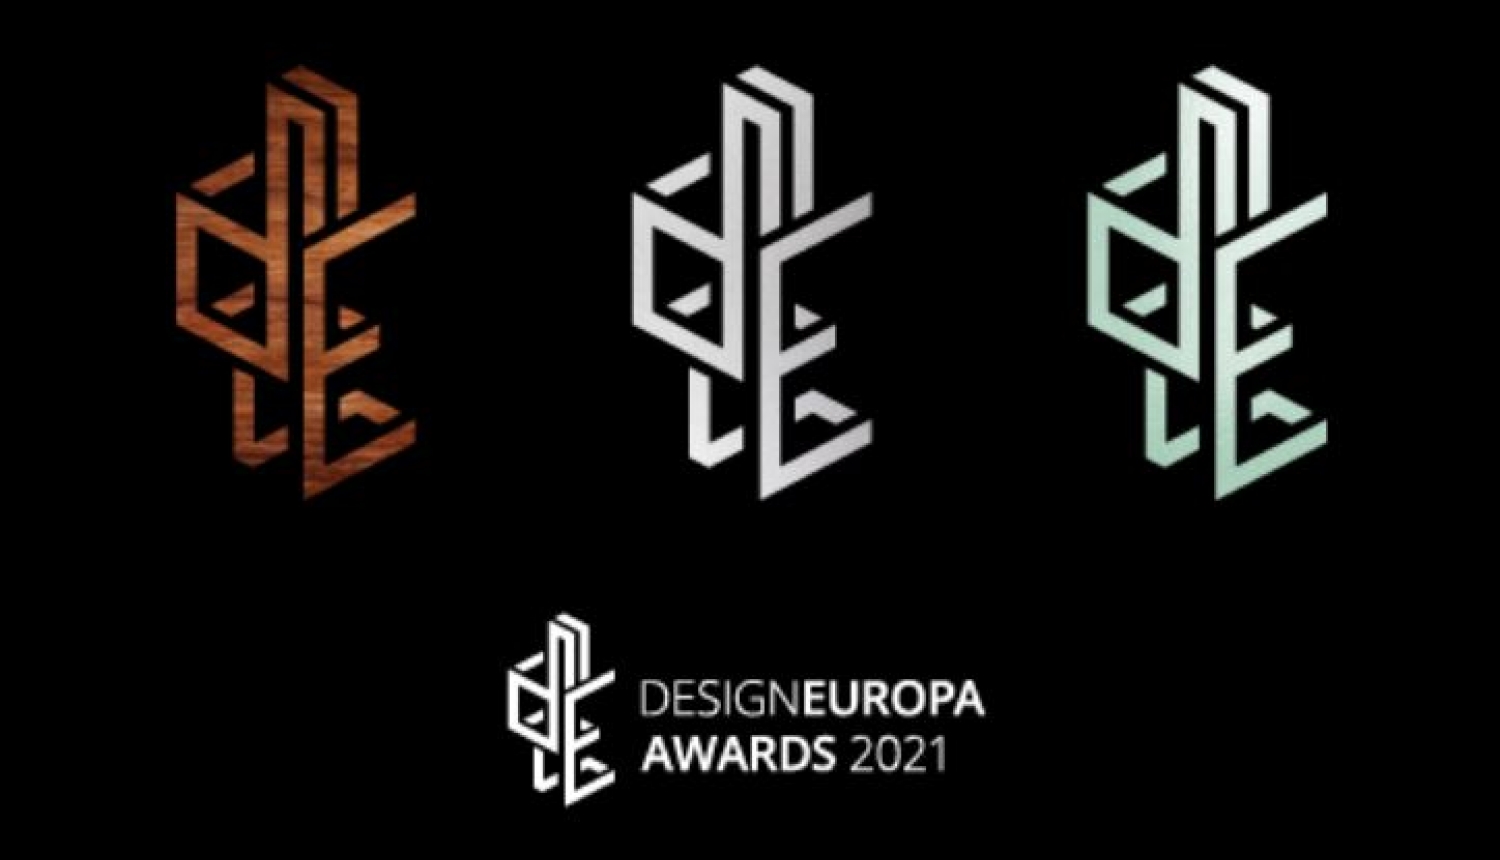 design europa awards 2021 logo